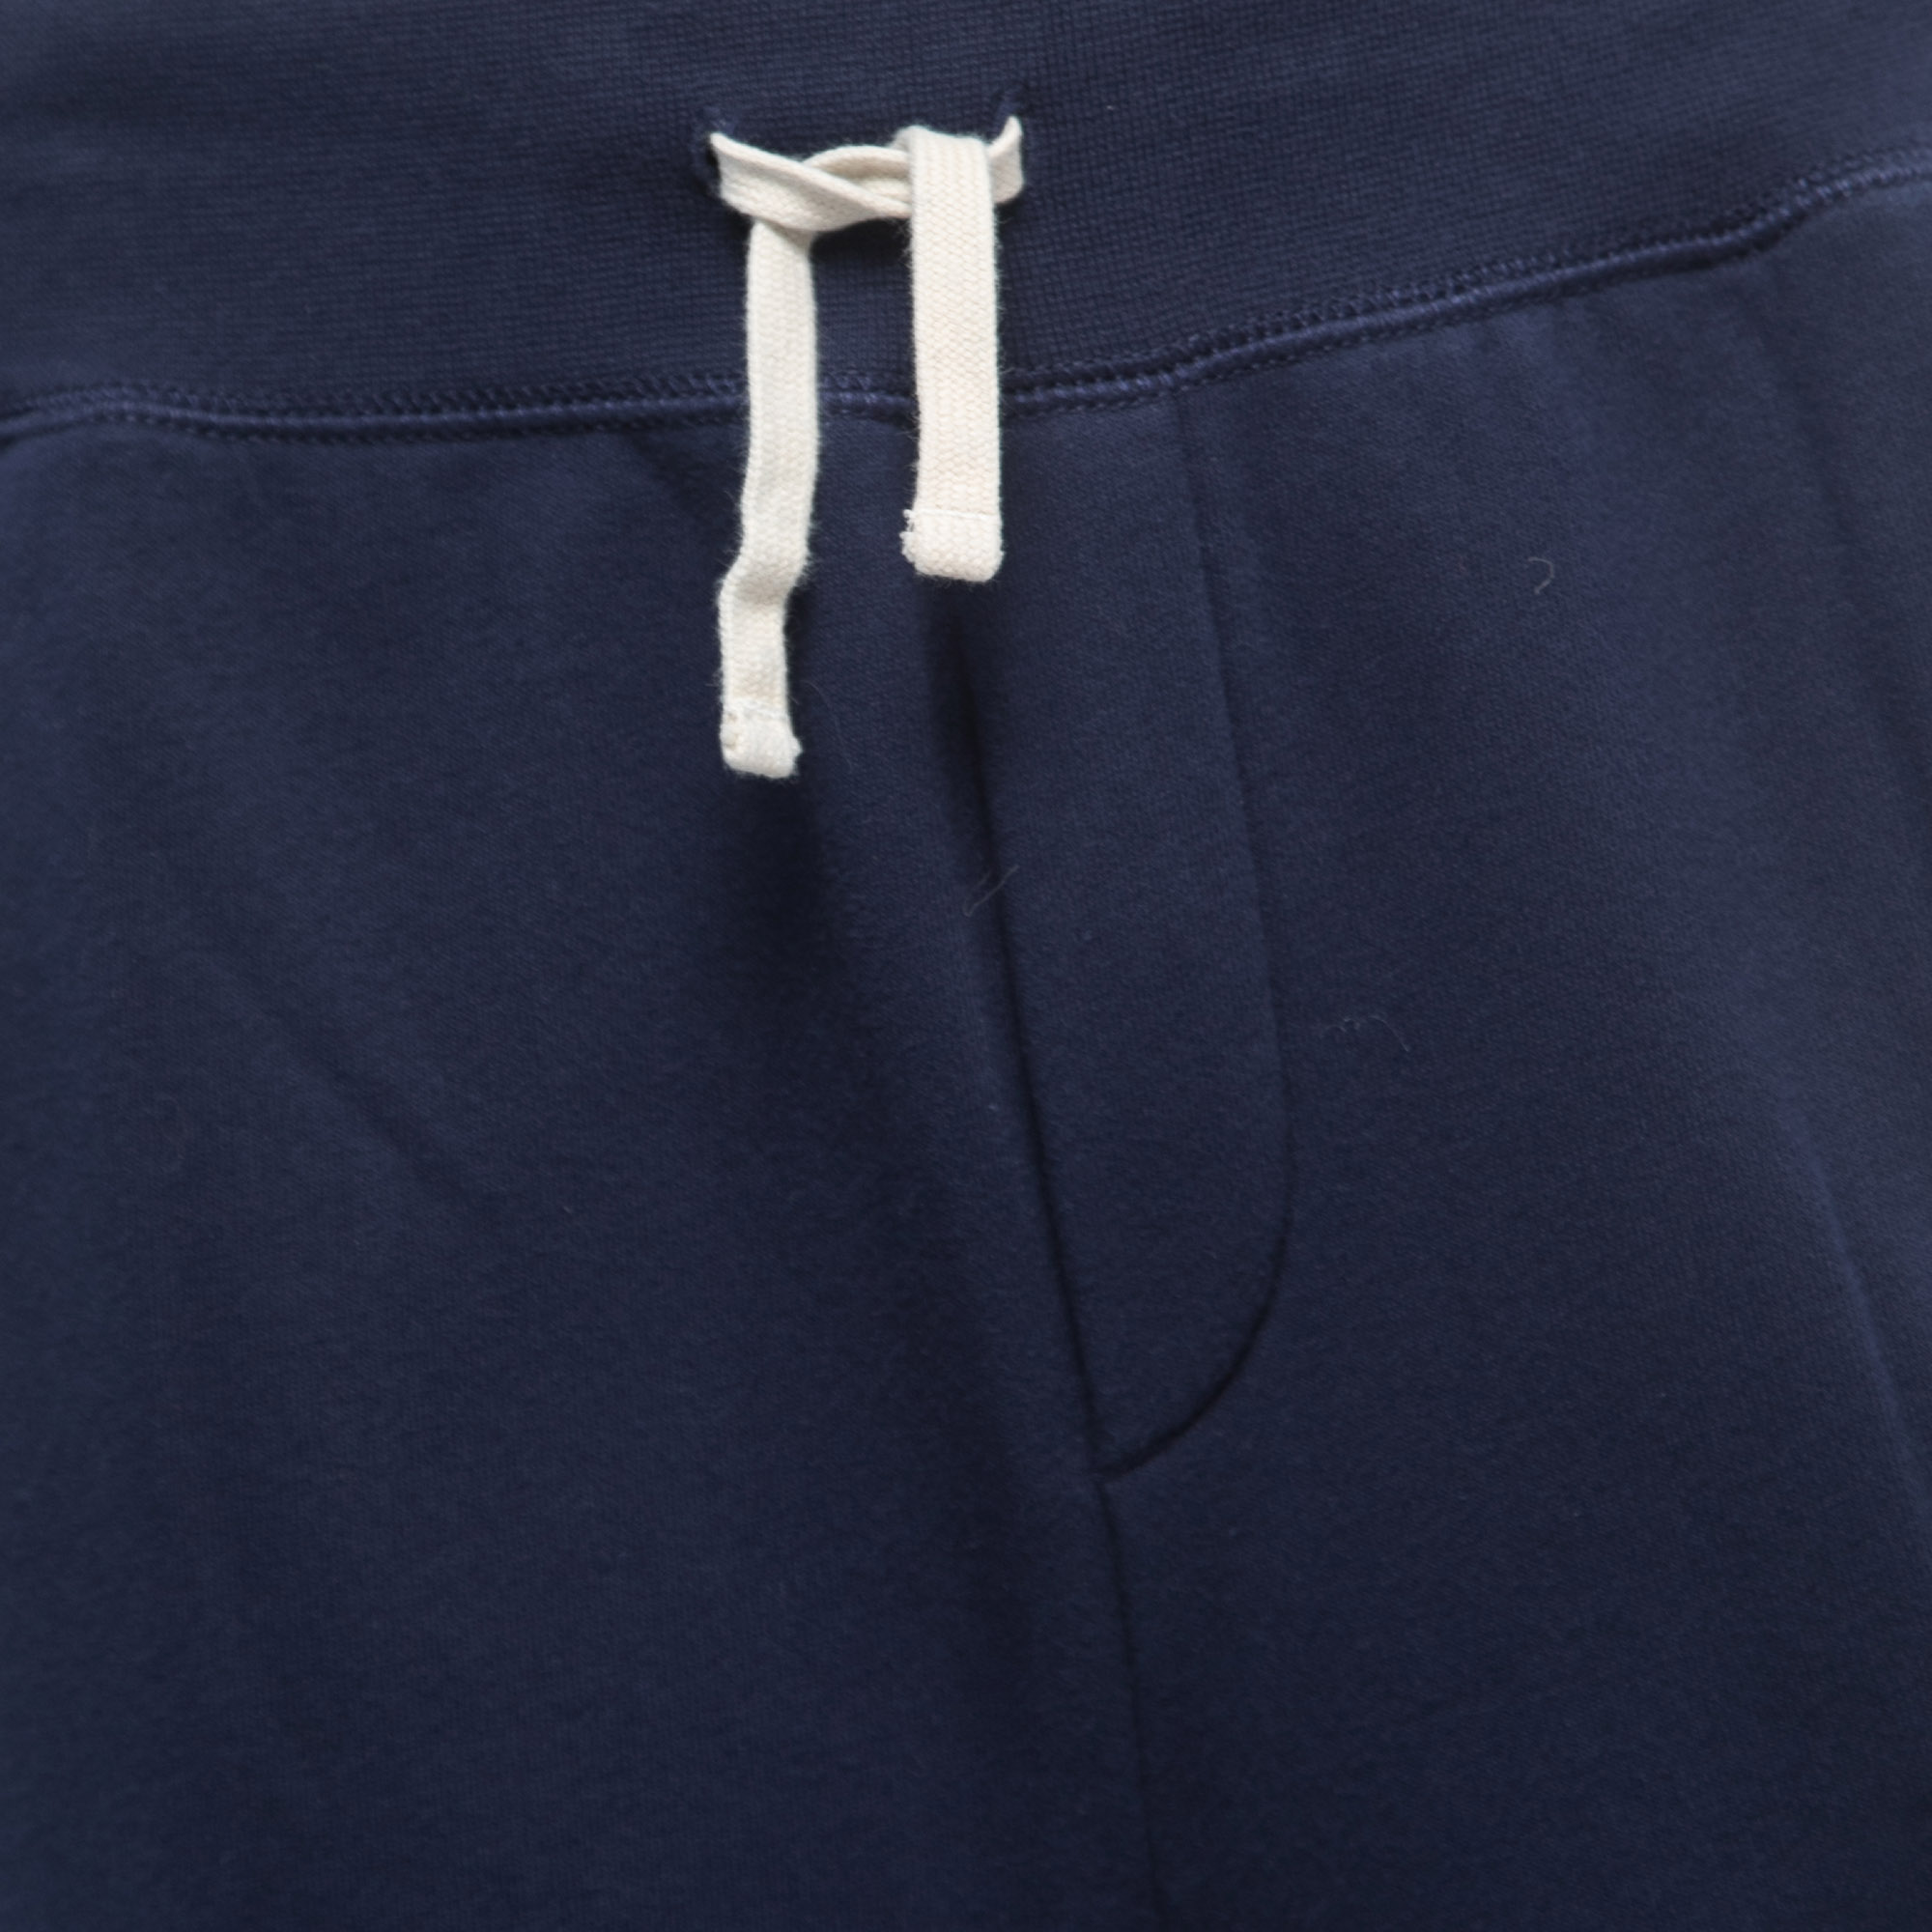 Polo Ralph Lauren Navy Blue Cotton Knit Joggers M